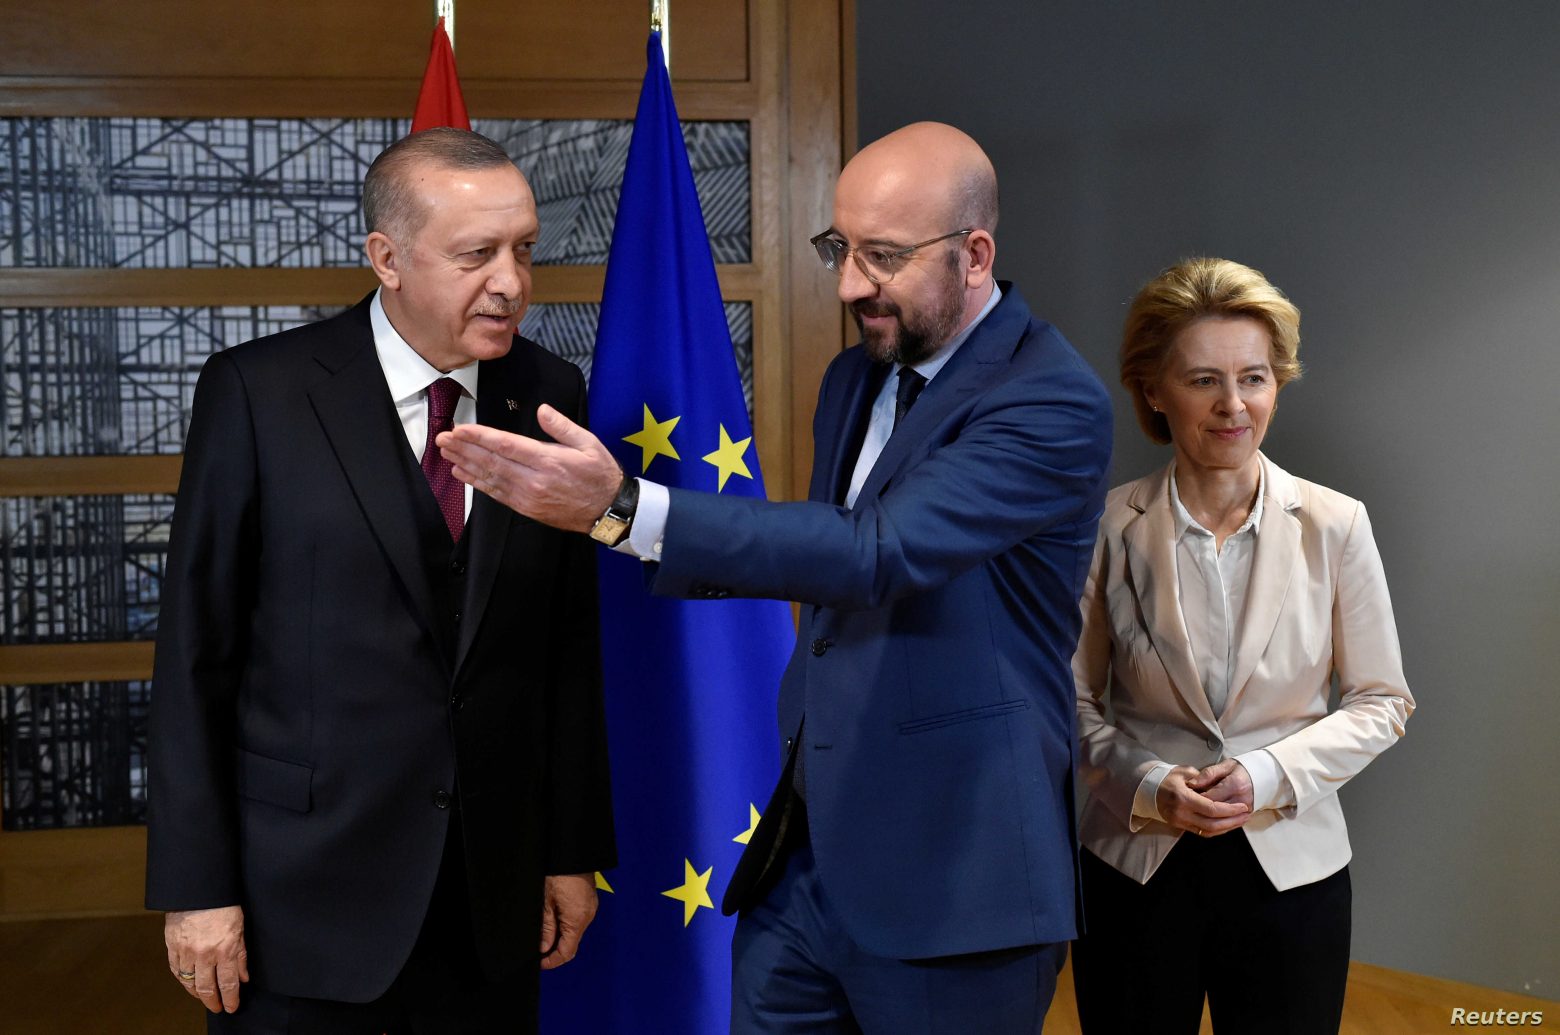 Σαρλ Μισέλ : Παράθυρο ευκαιρίας για τις σχέσεις με ΕΕ εάν η Τουρκία σταματήσει τις μονομερείς ενέργειες